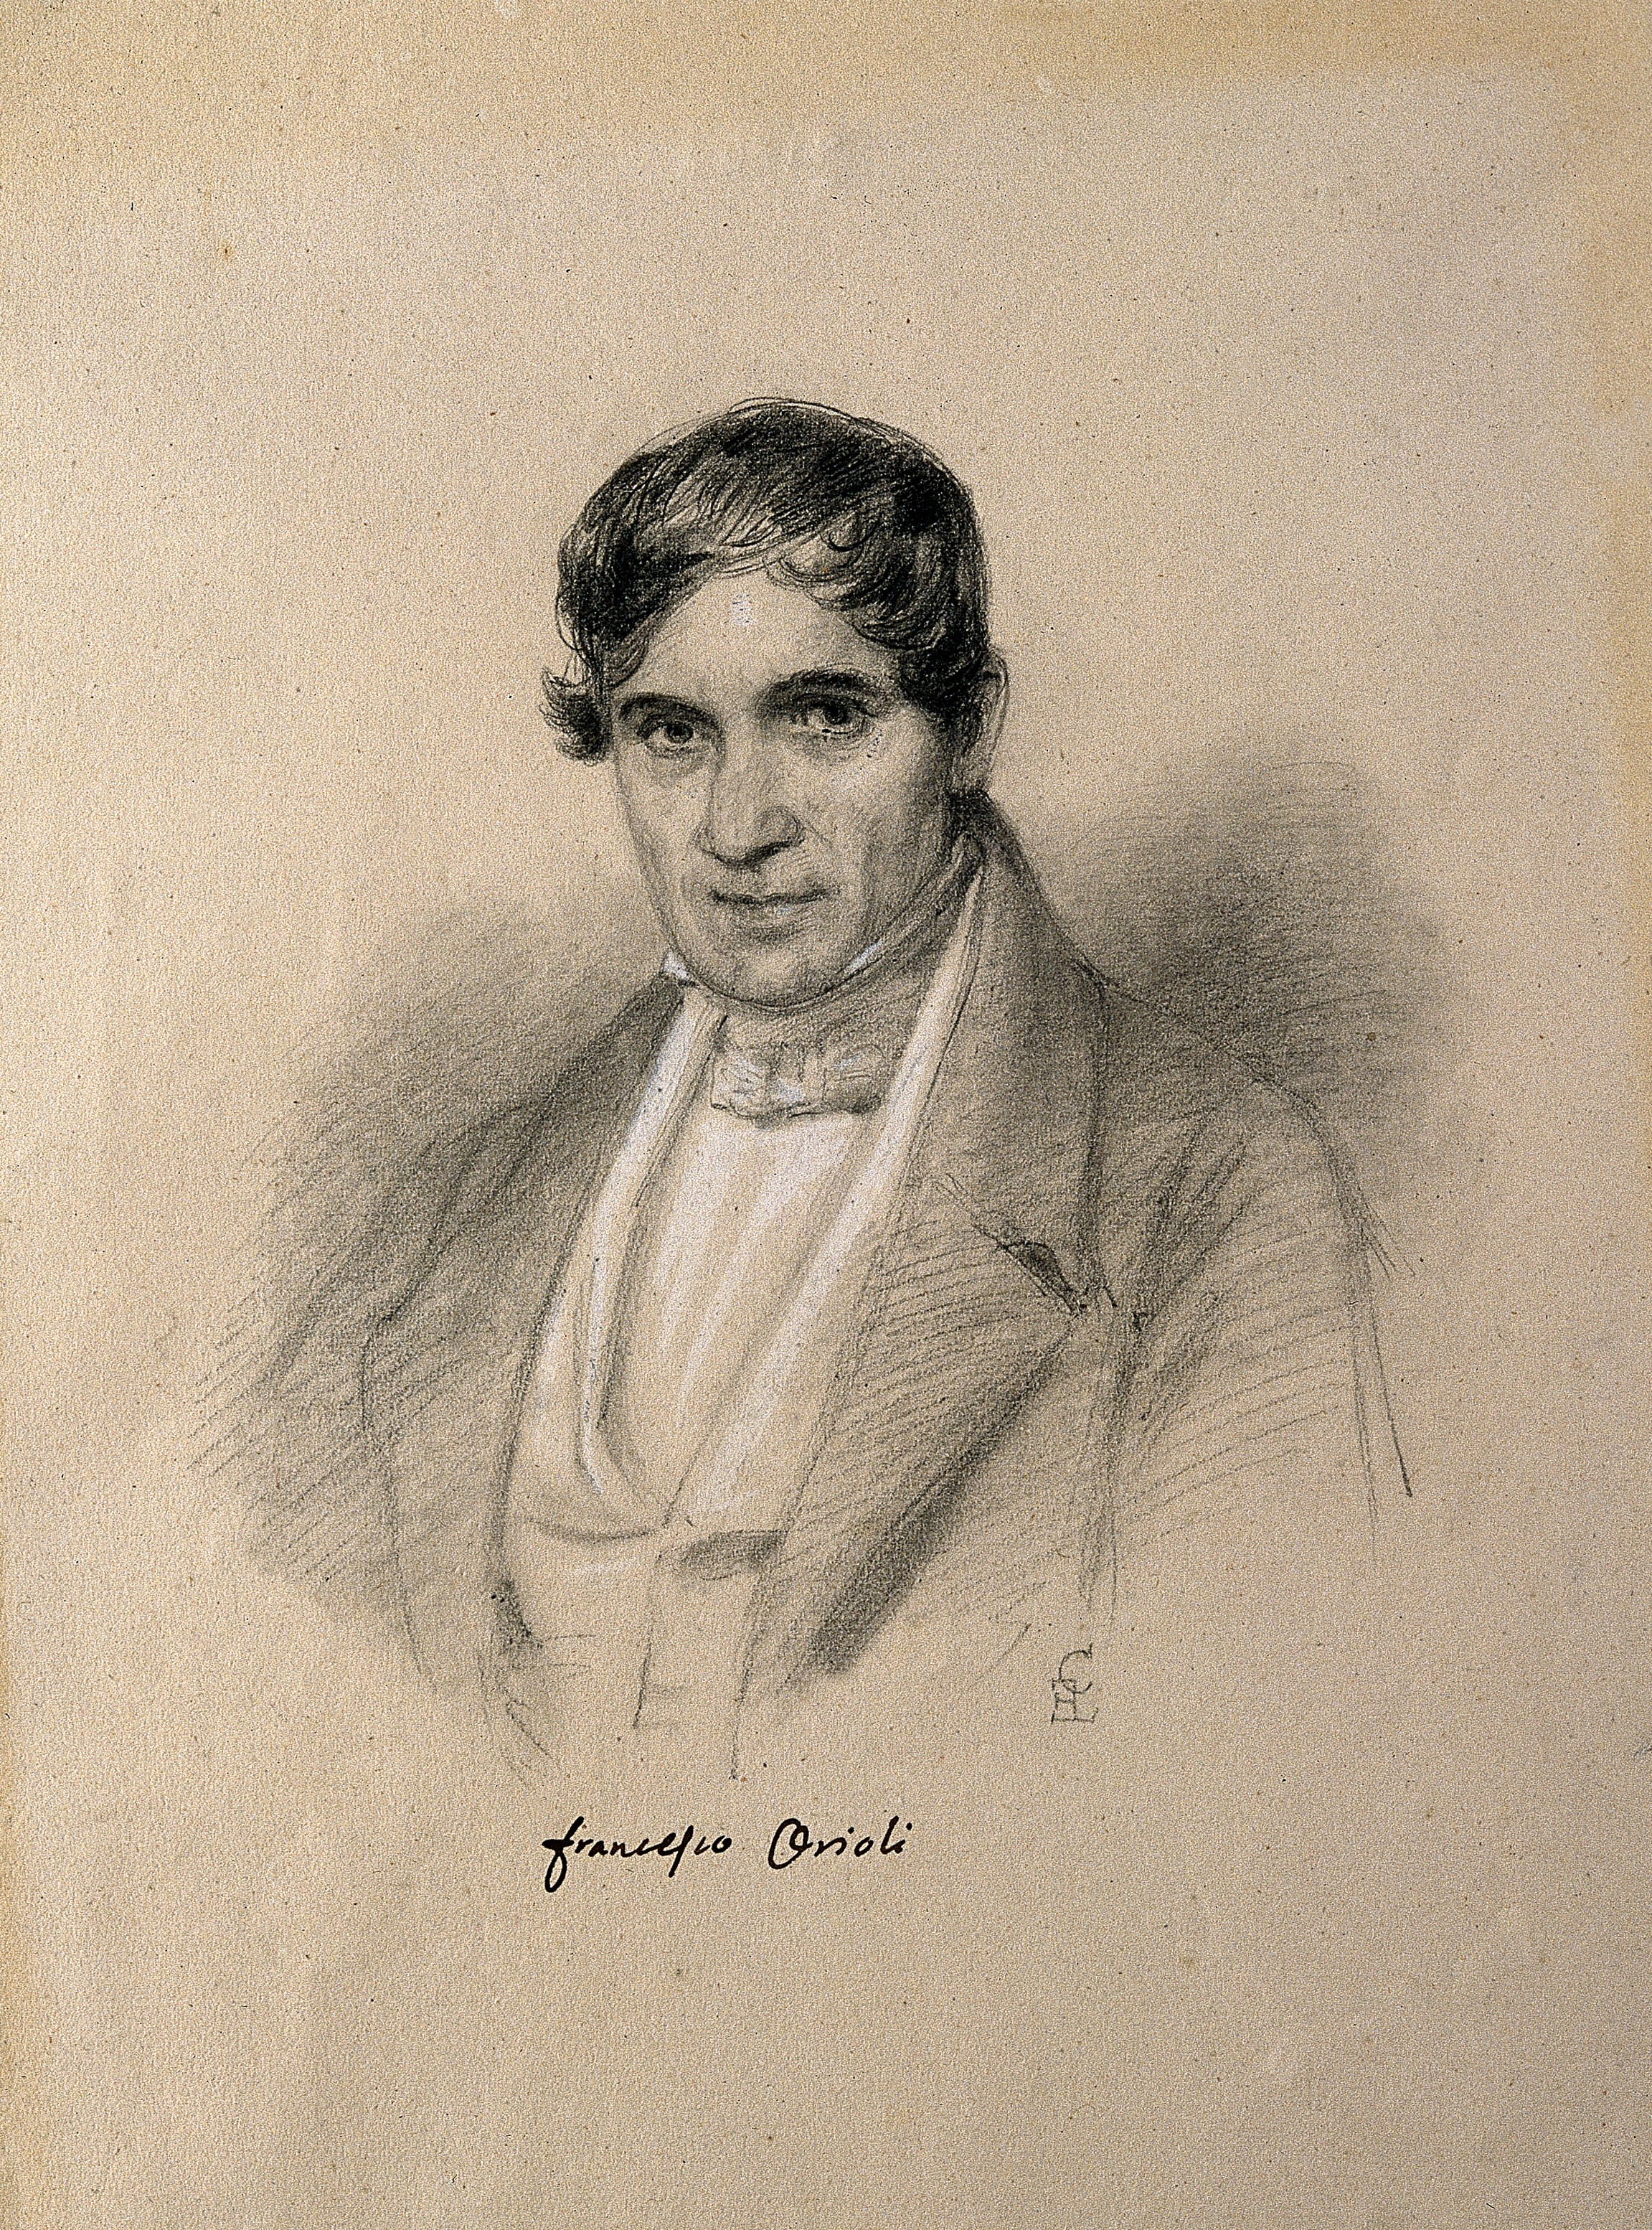 Francesco Orioli. Pencil drawing by C. E. Liverati, 1841. Wellcome V0004374